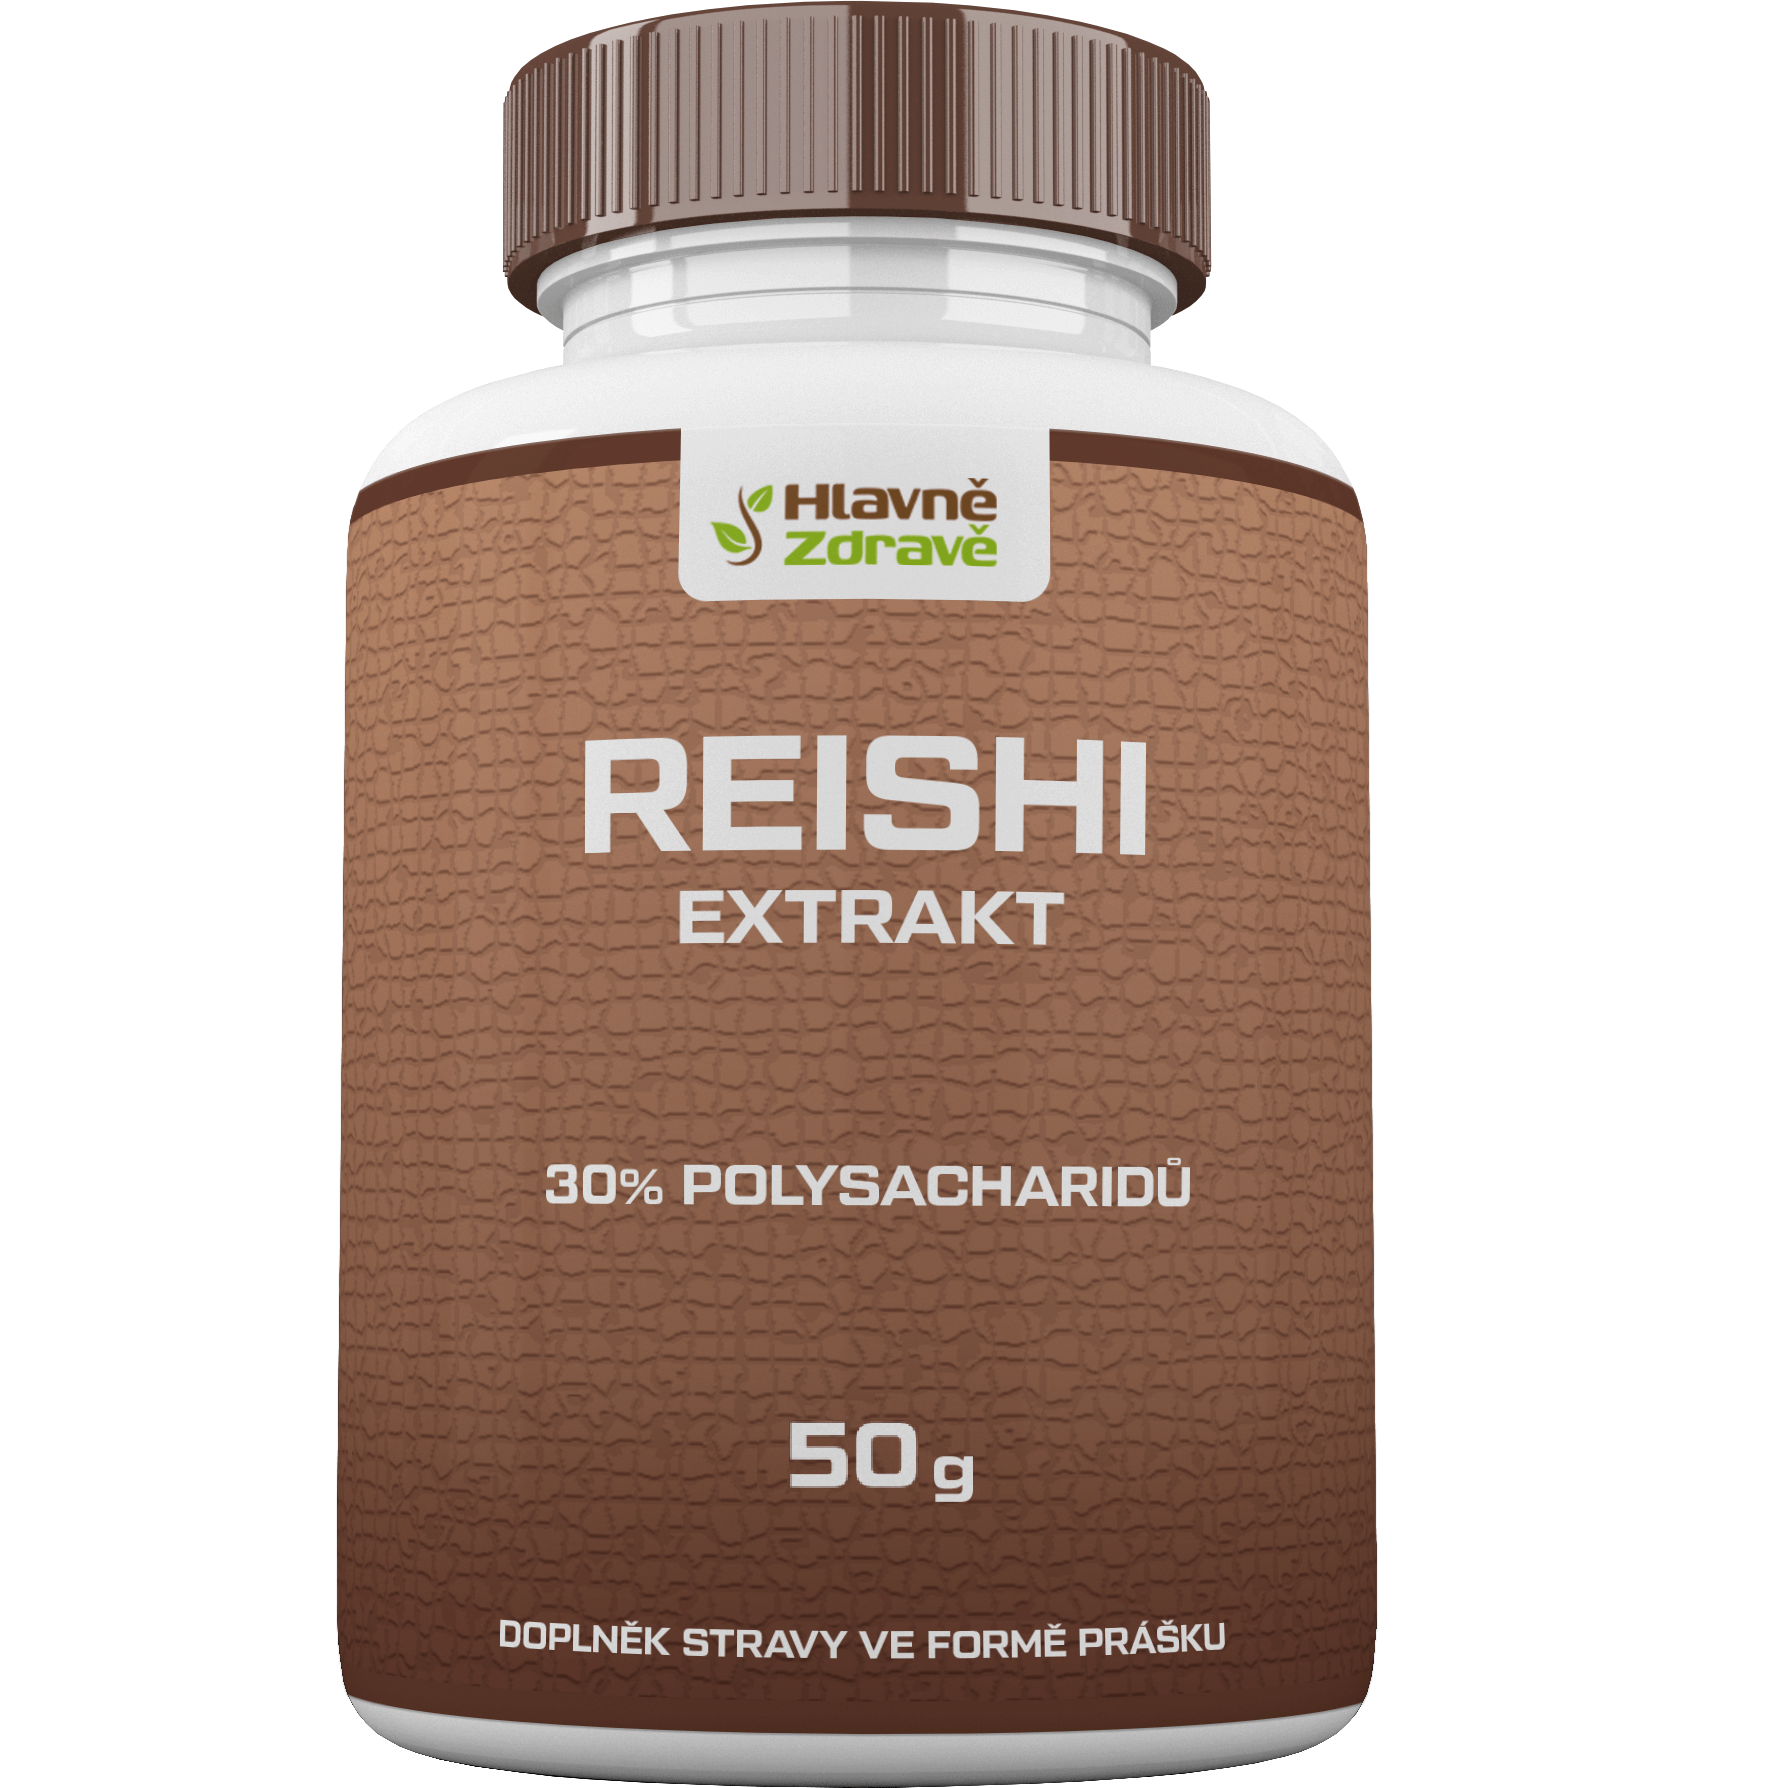 reishi extrakt prášek 30% polysacharidů 50g